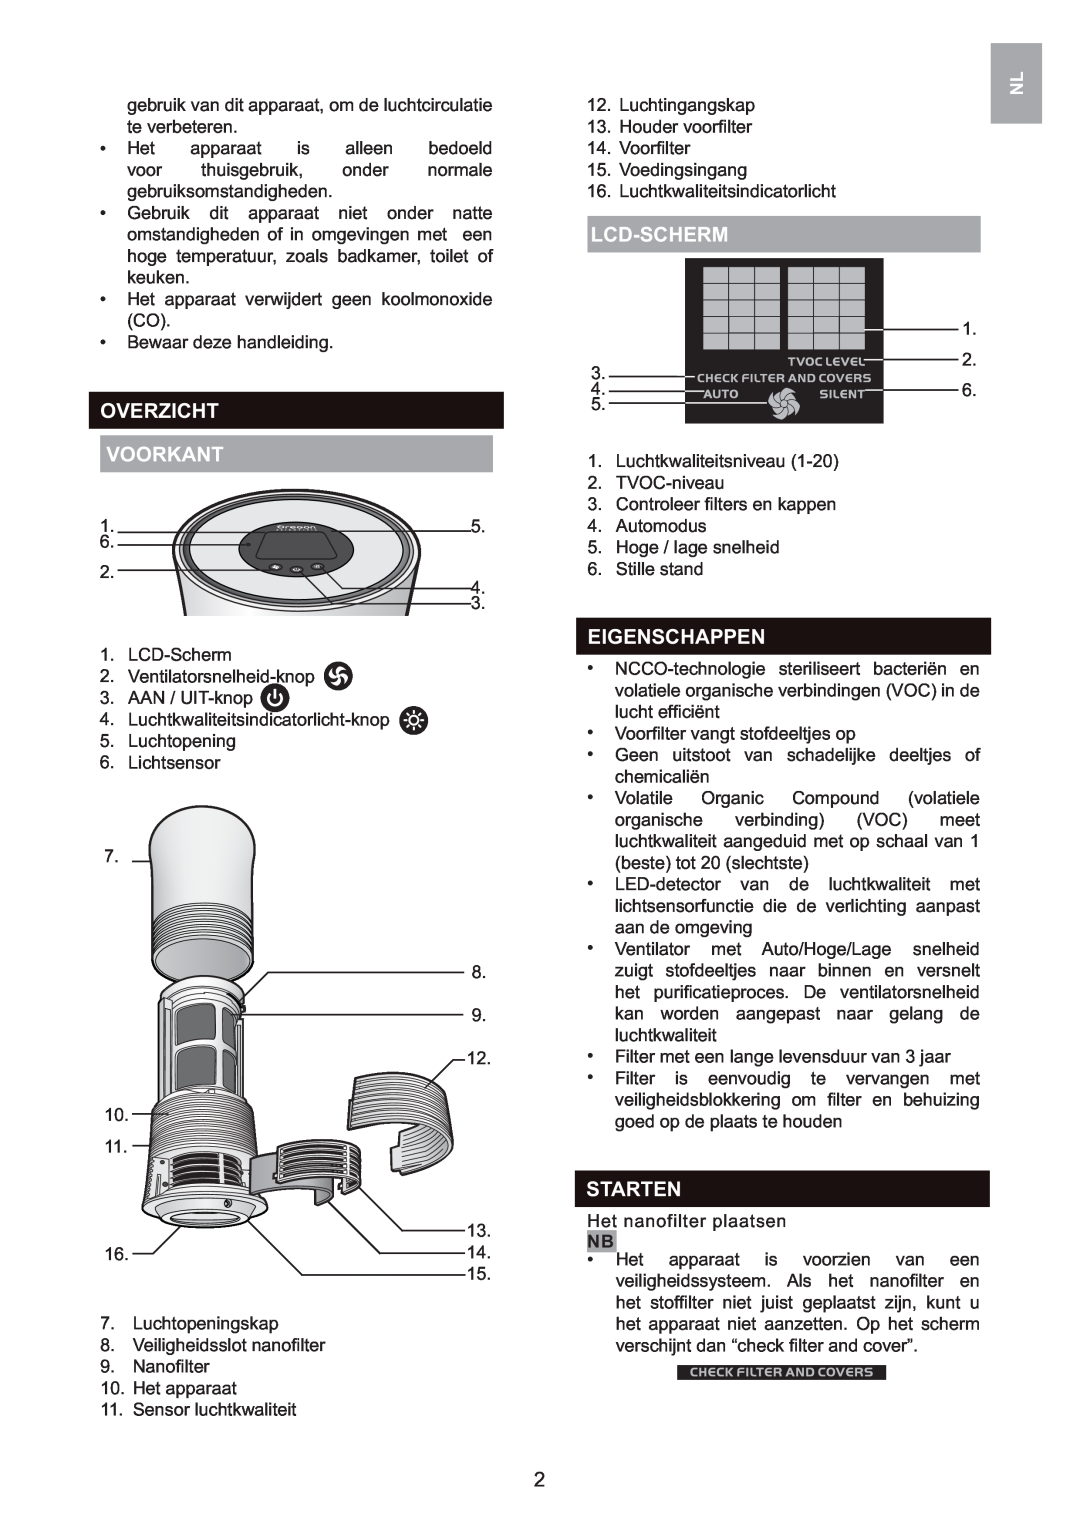 Oregon Scientific WS907 user manual Overzicht Voorkant, Lcd-Scherm, Eigenschappen, Starten 